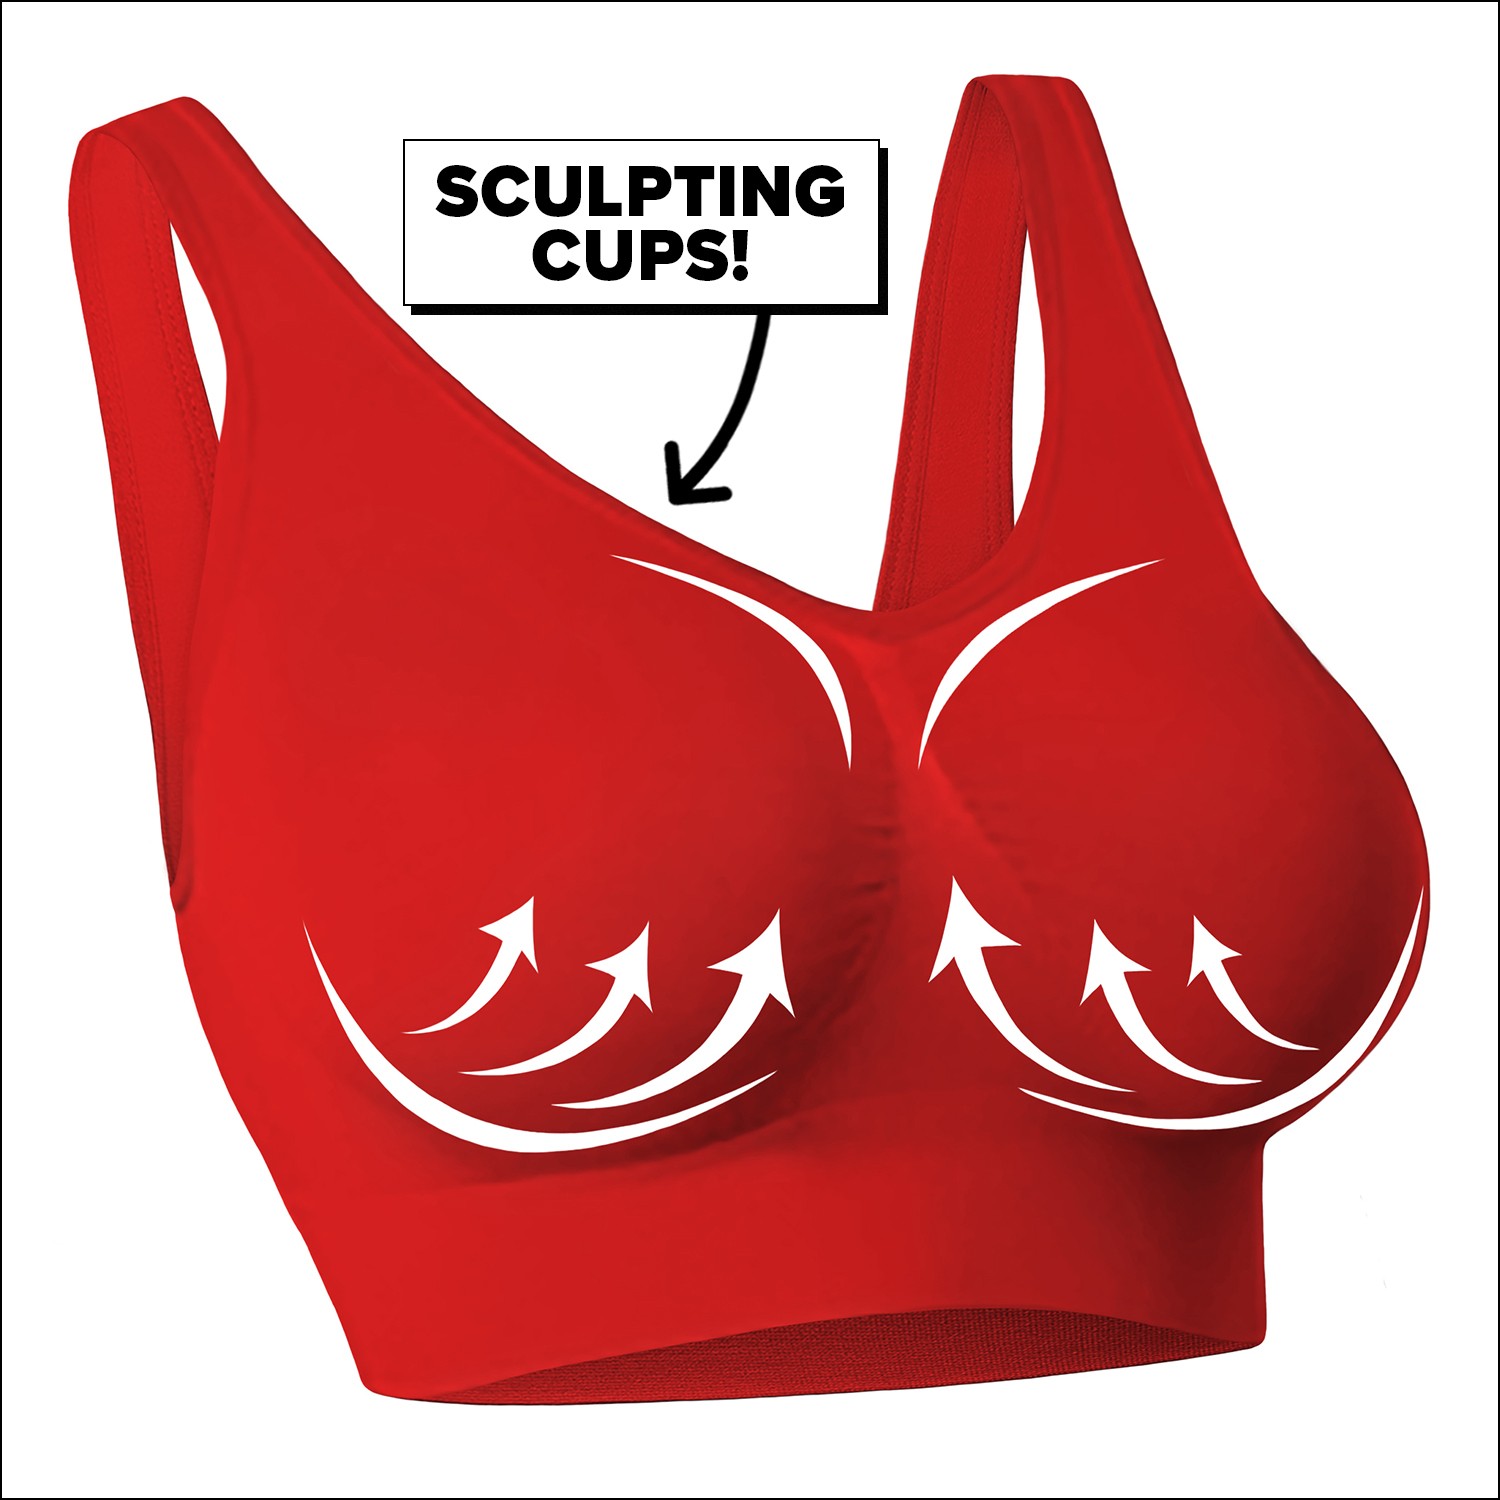 Sculpting cups